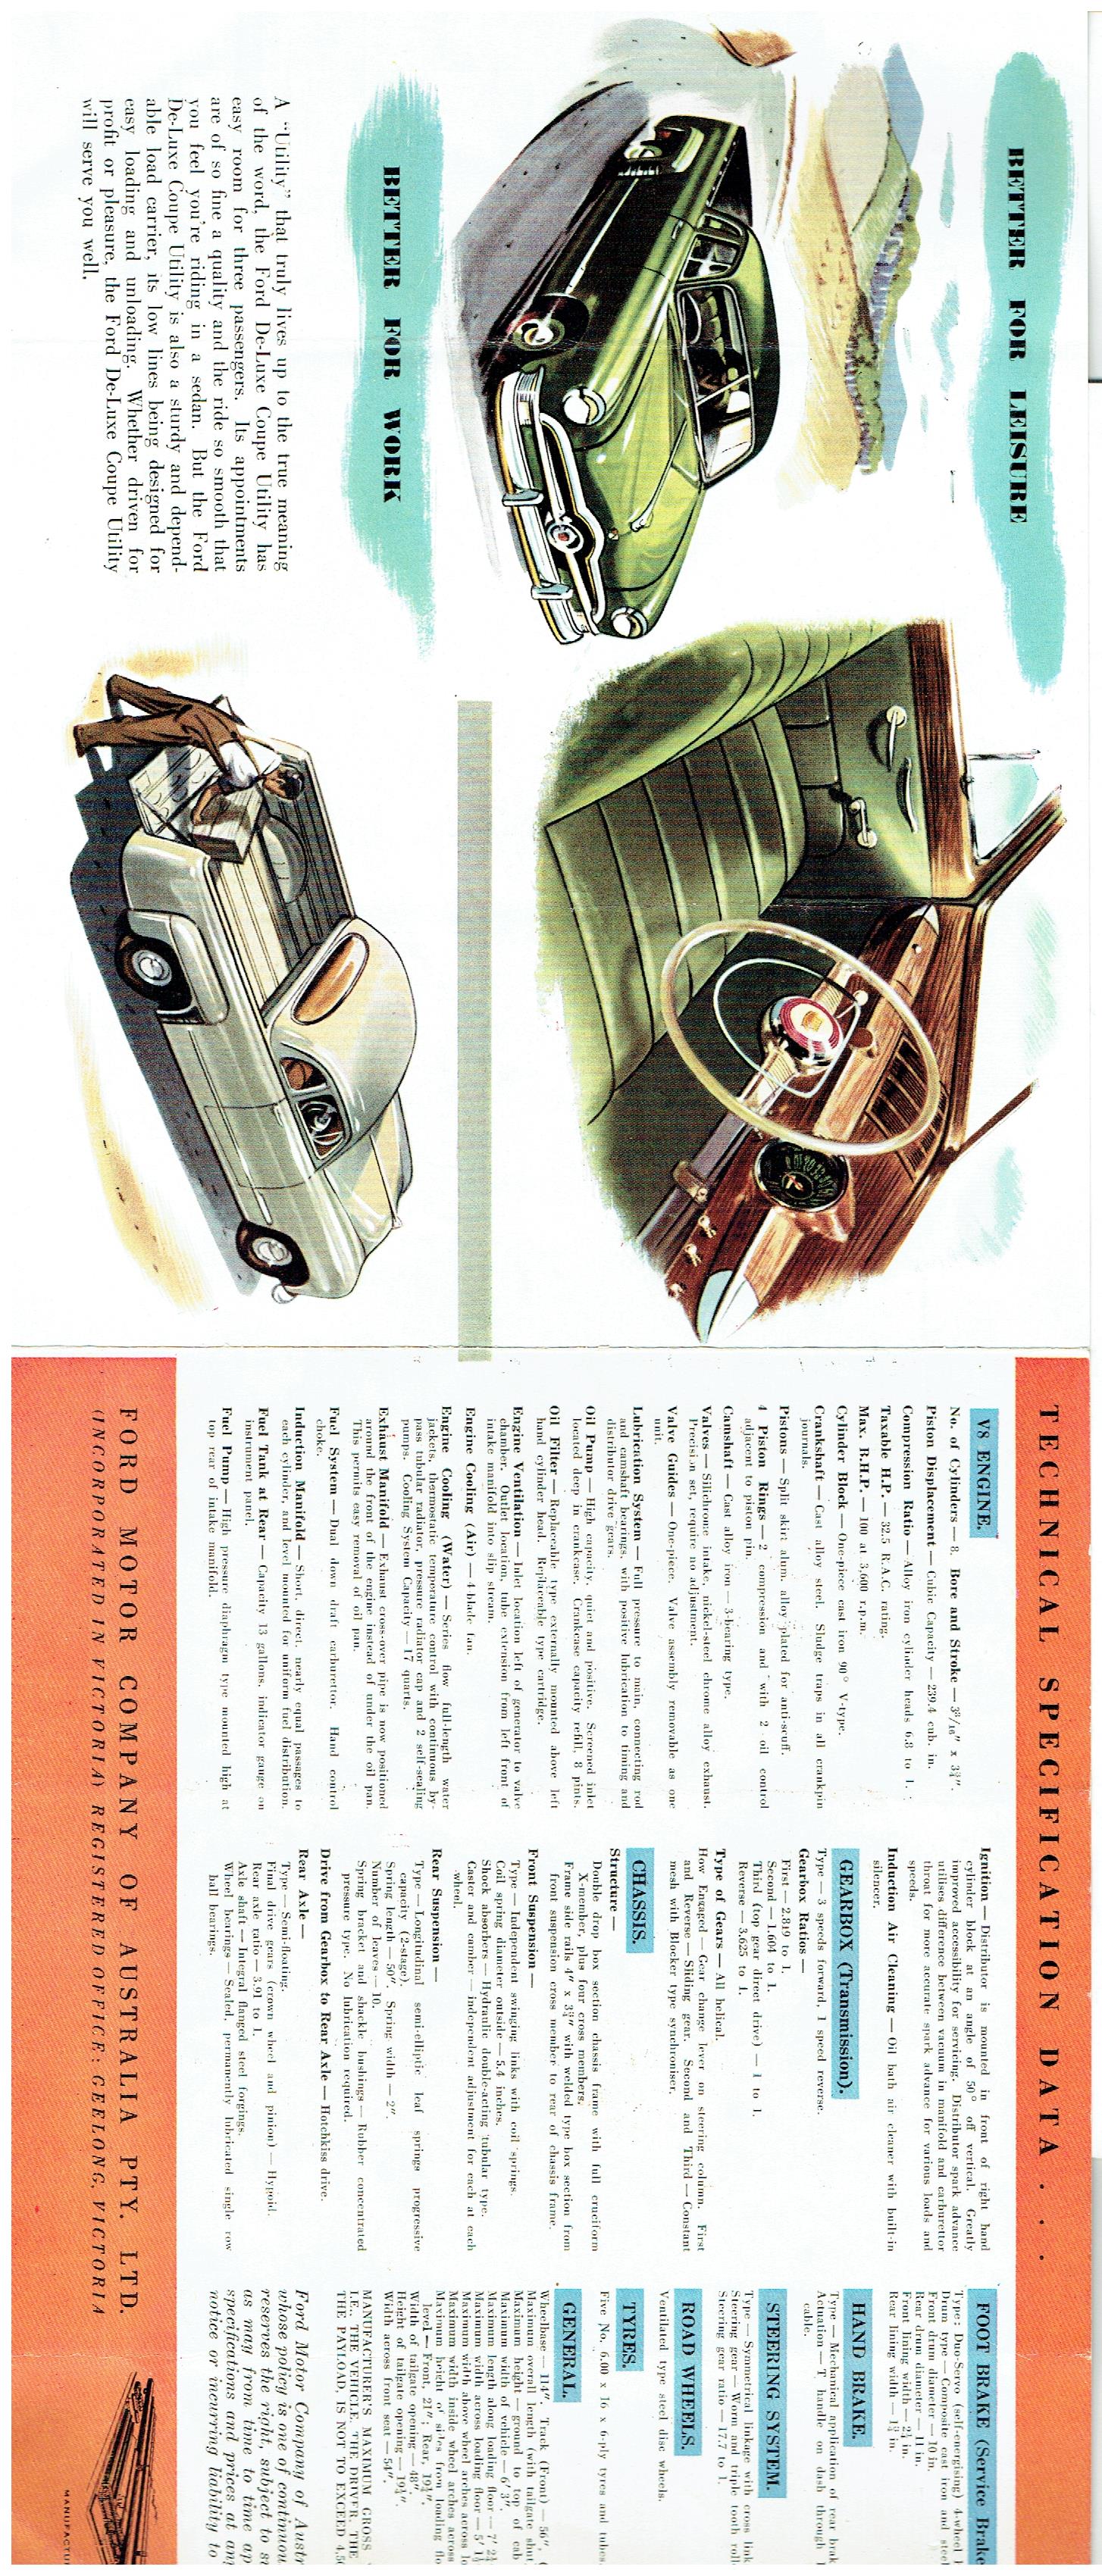 1950 Ford Deluxe Ute (6).jpg-2022-12-7 12.58.55